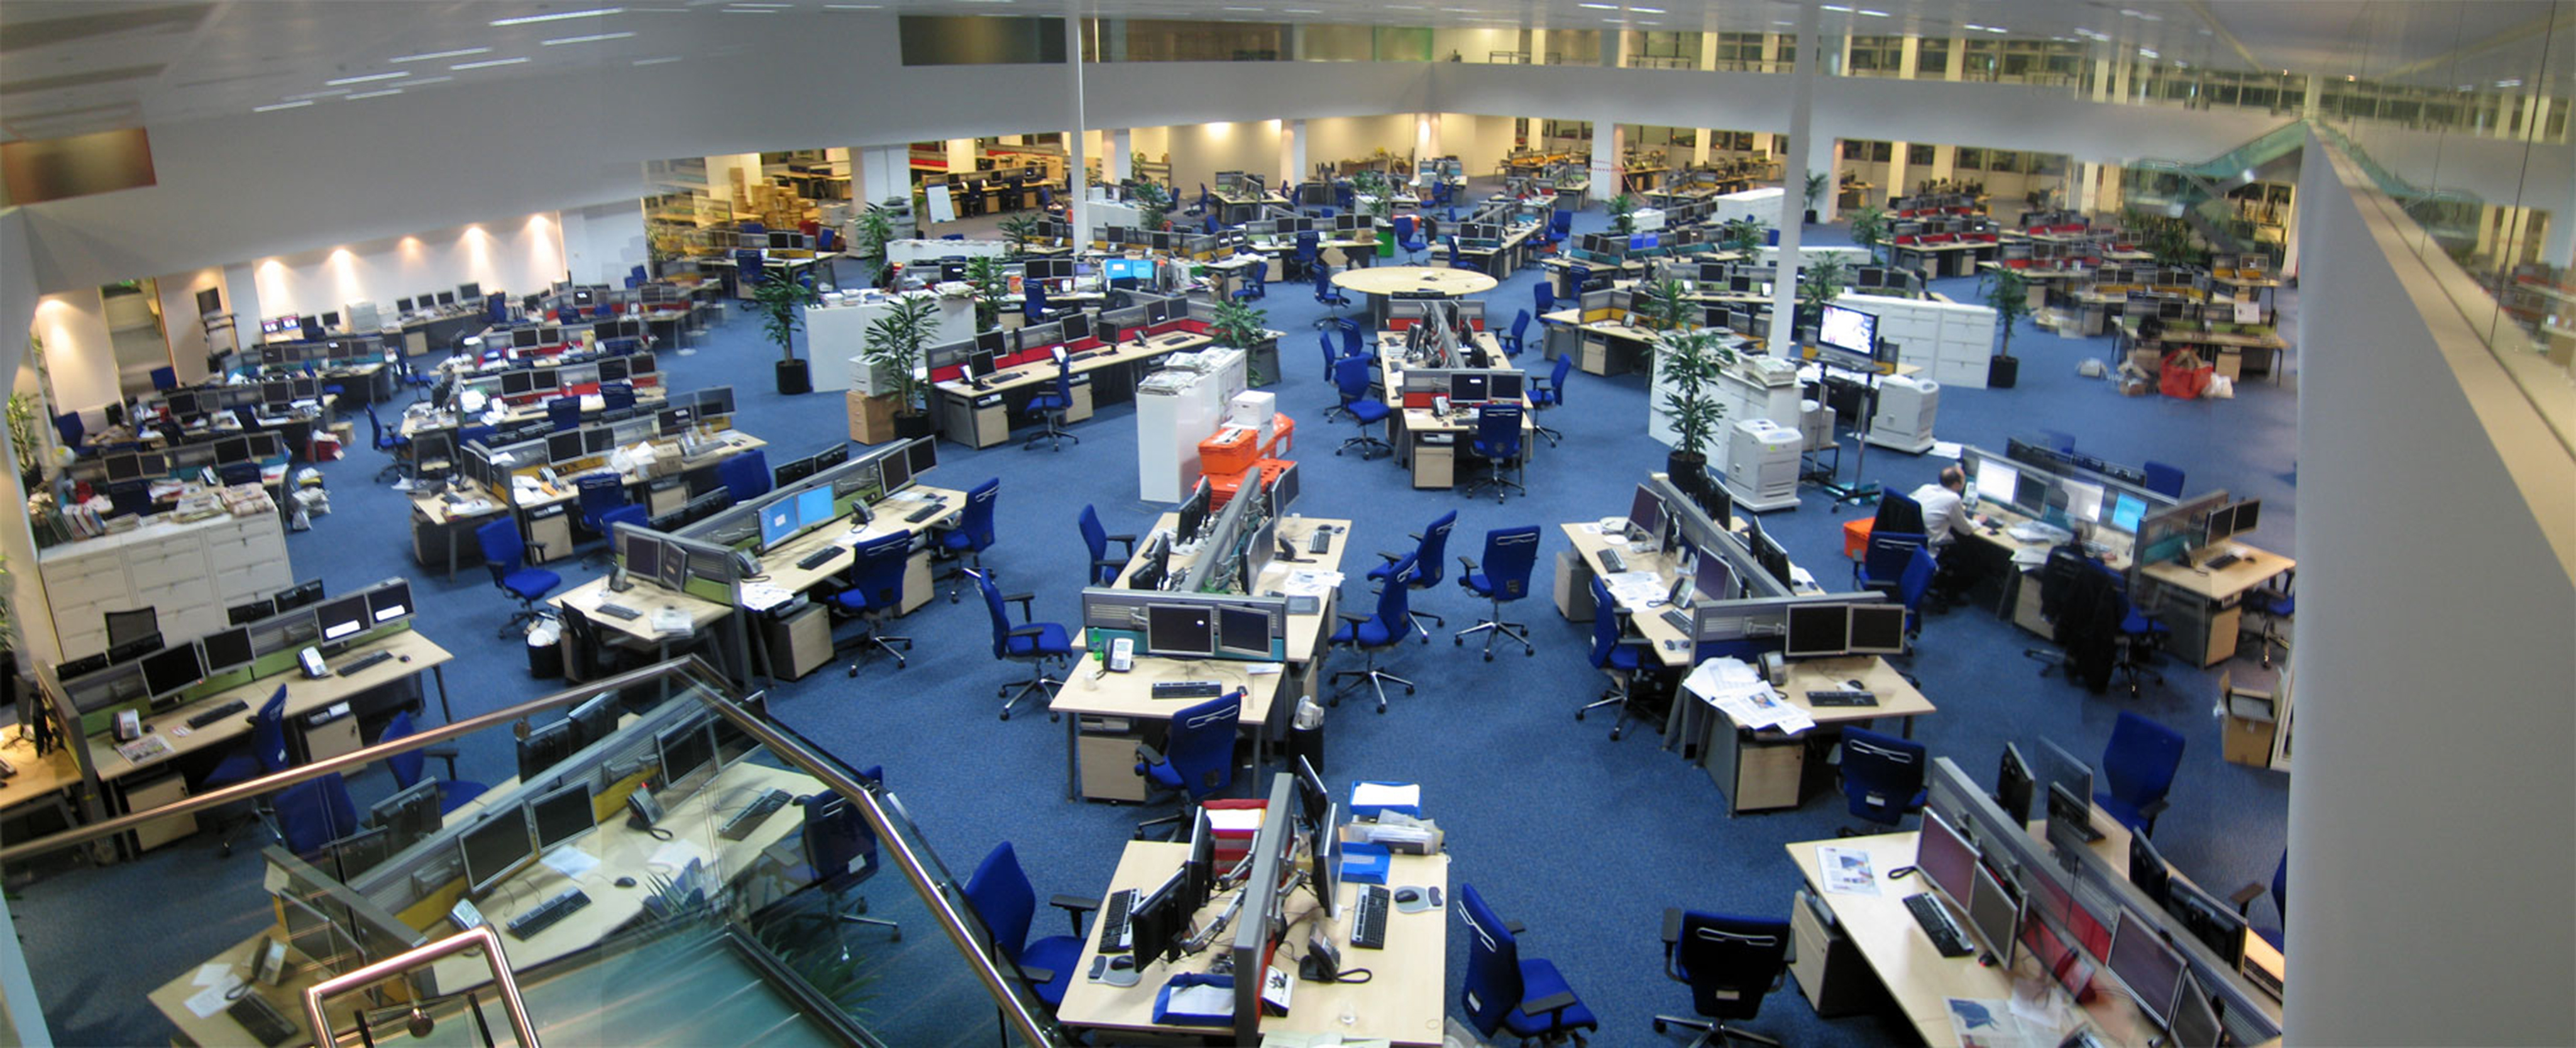 Esta foto mostra uma grande sala de notícias aberta com espaço suficiente para acomodar cerca de 200 funcionários.